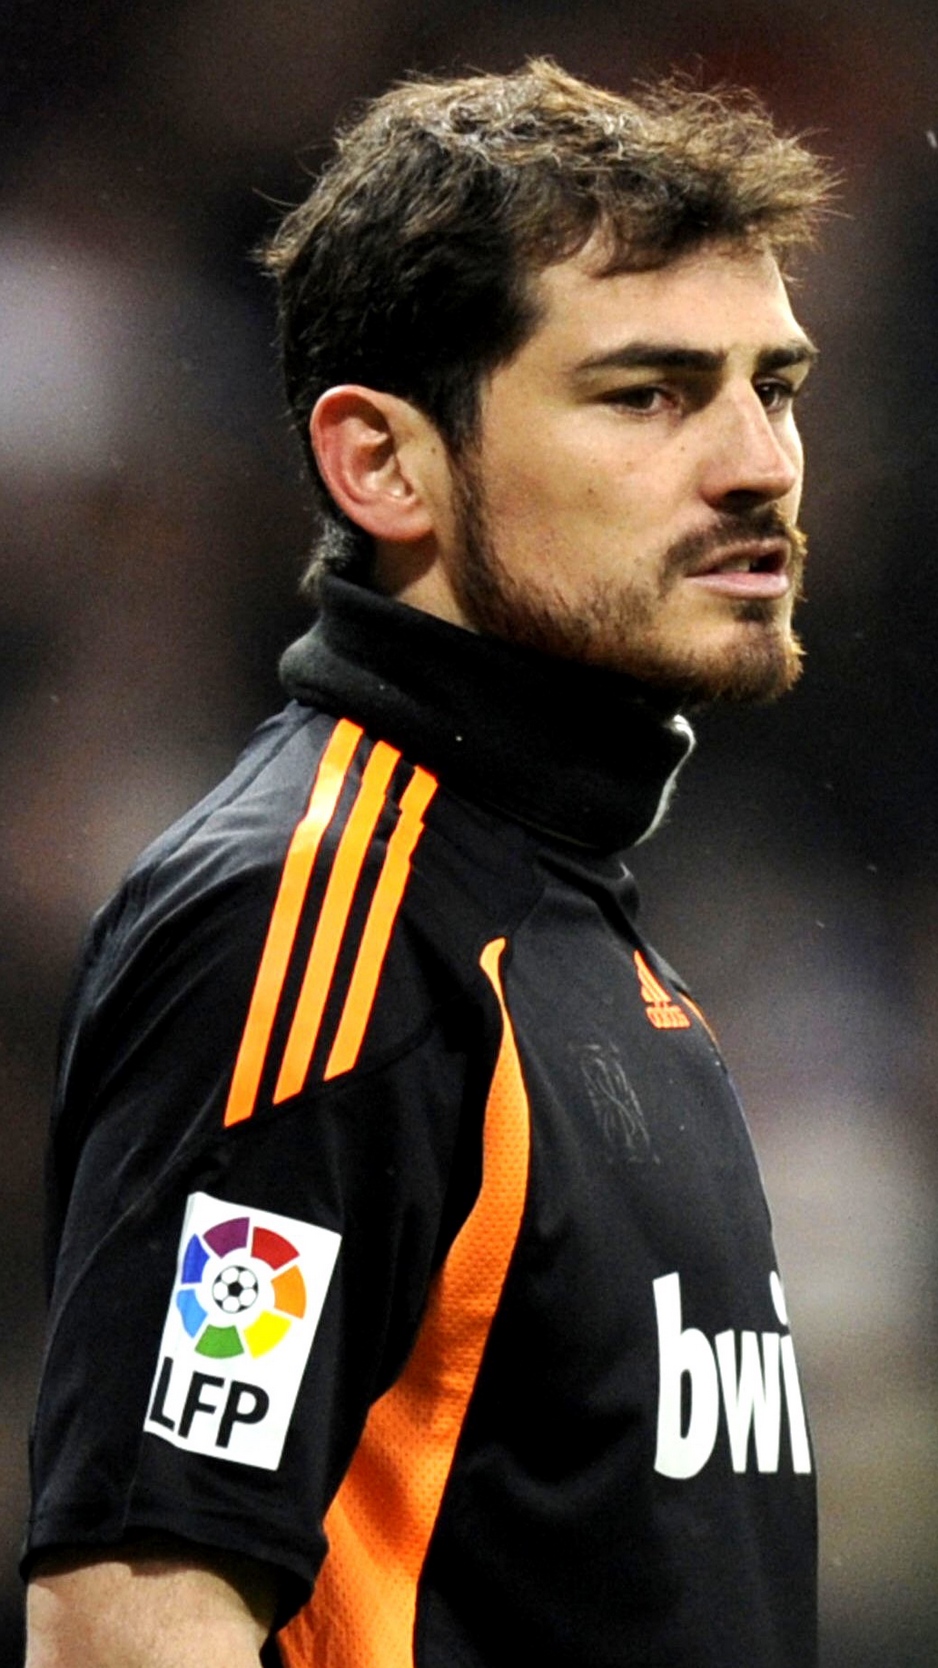 Wallpaper Iker Casillas Football Player Real